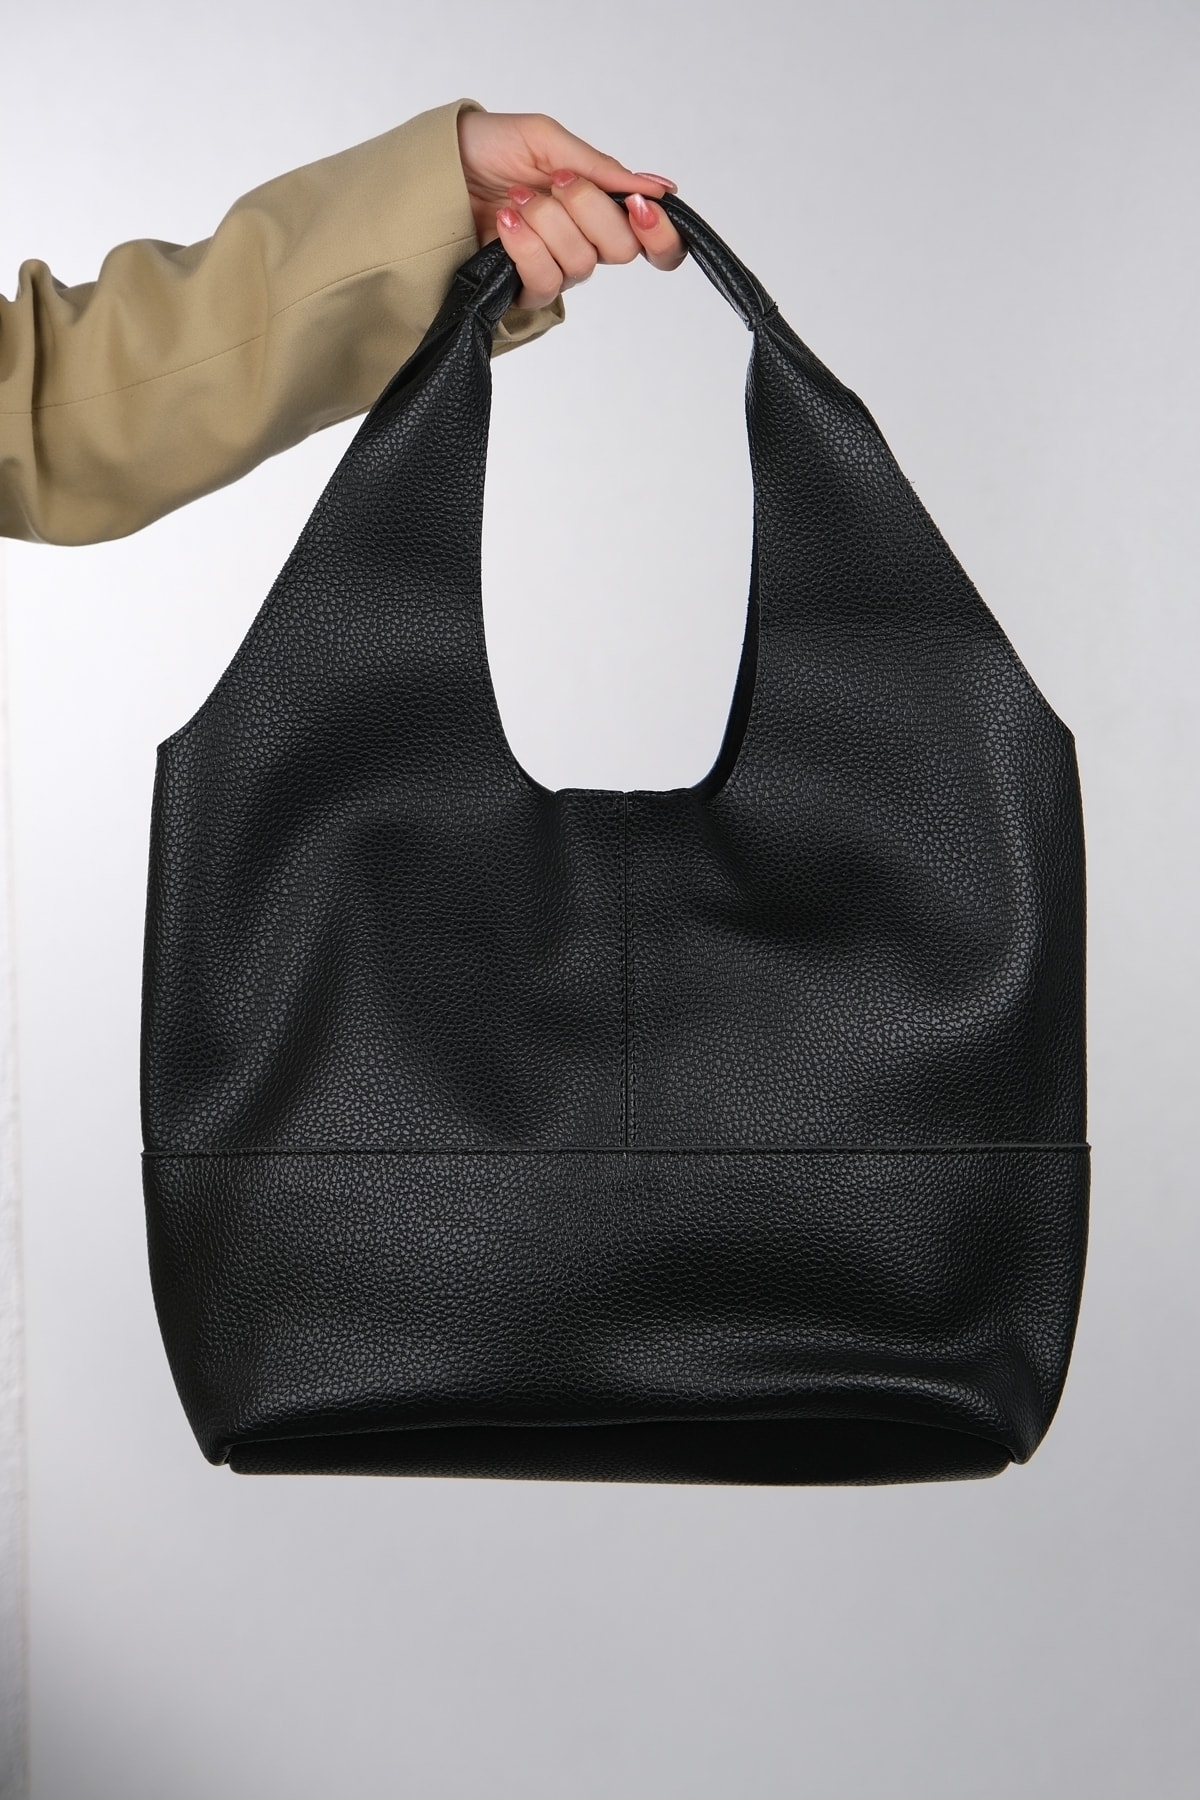 LuviShoes Women's Always Black Floter Shoulder Bag